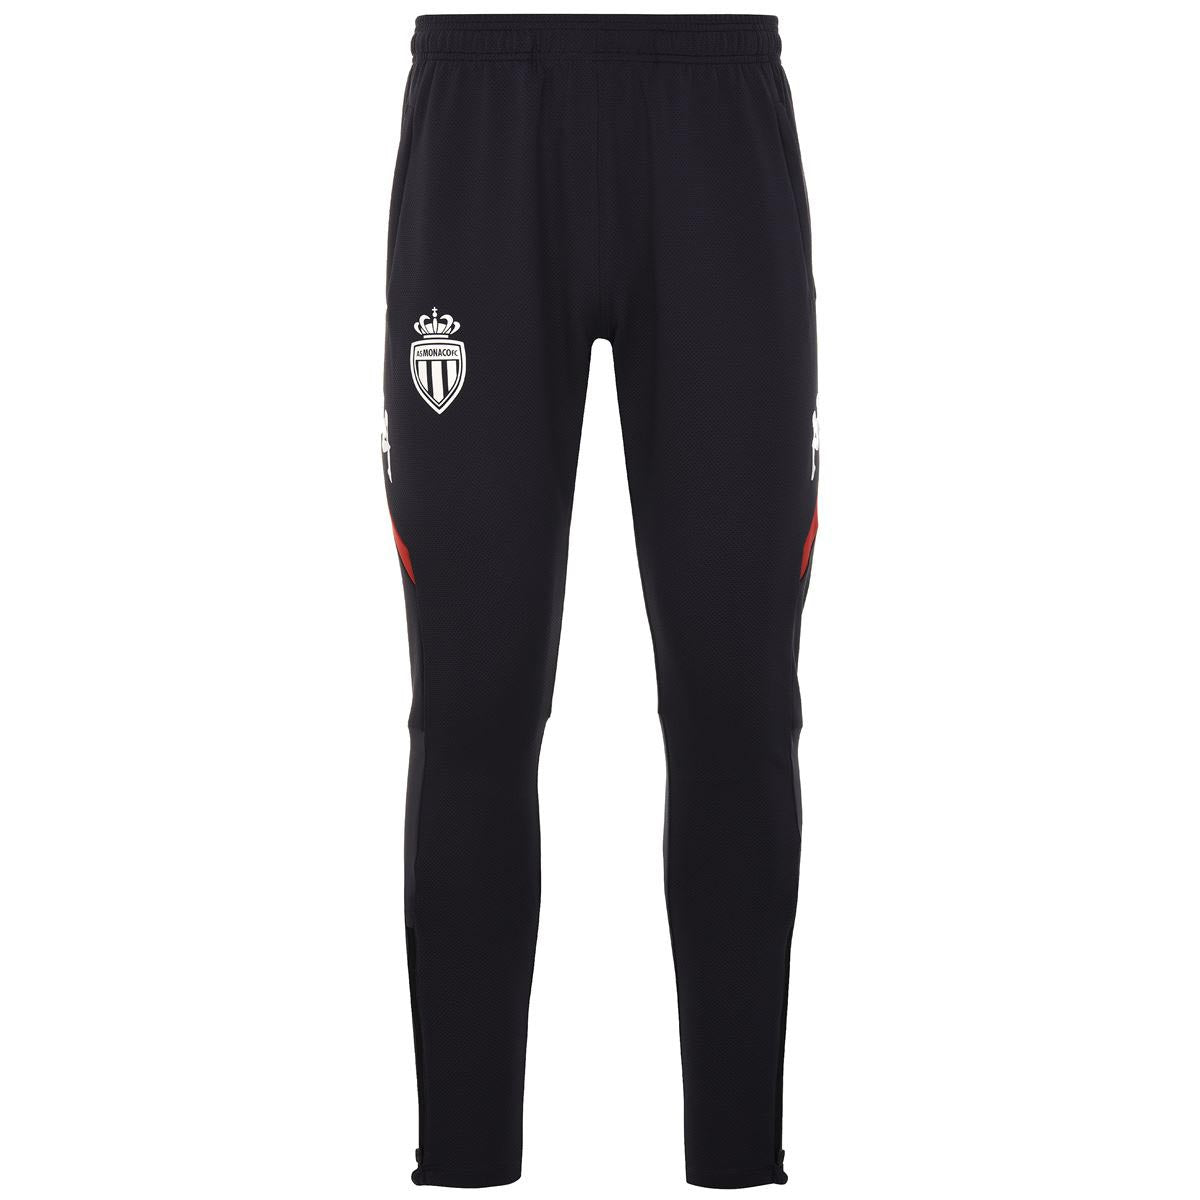 Pantalones Abunszip Pro AS Monaco Gris Niño